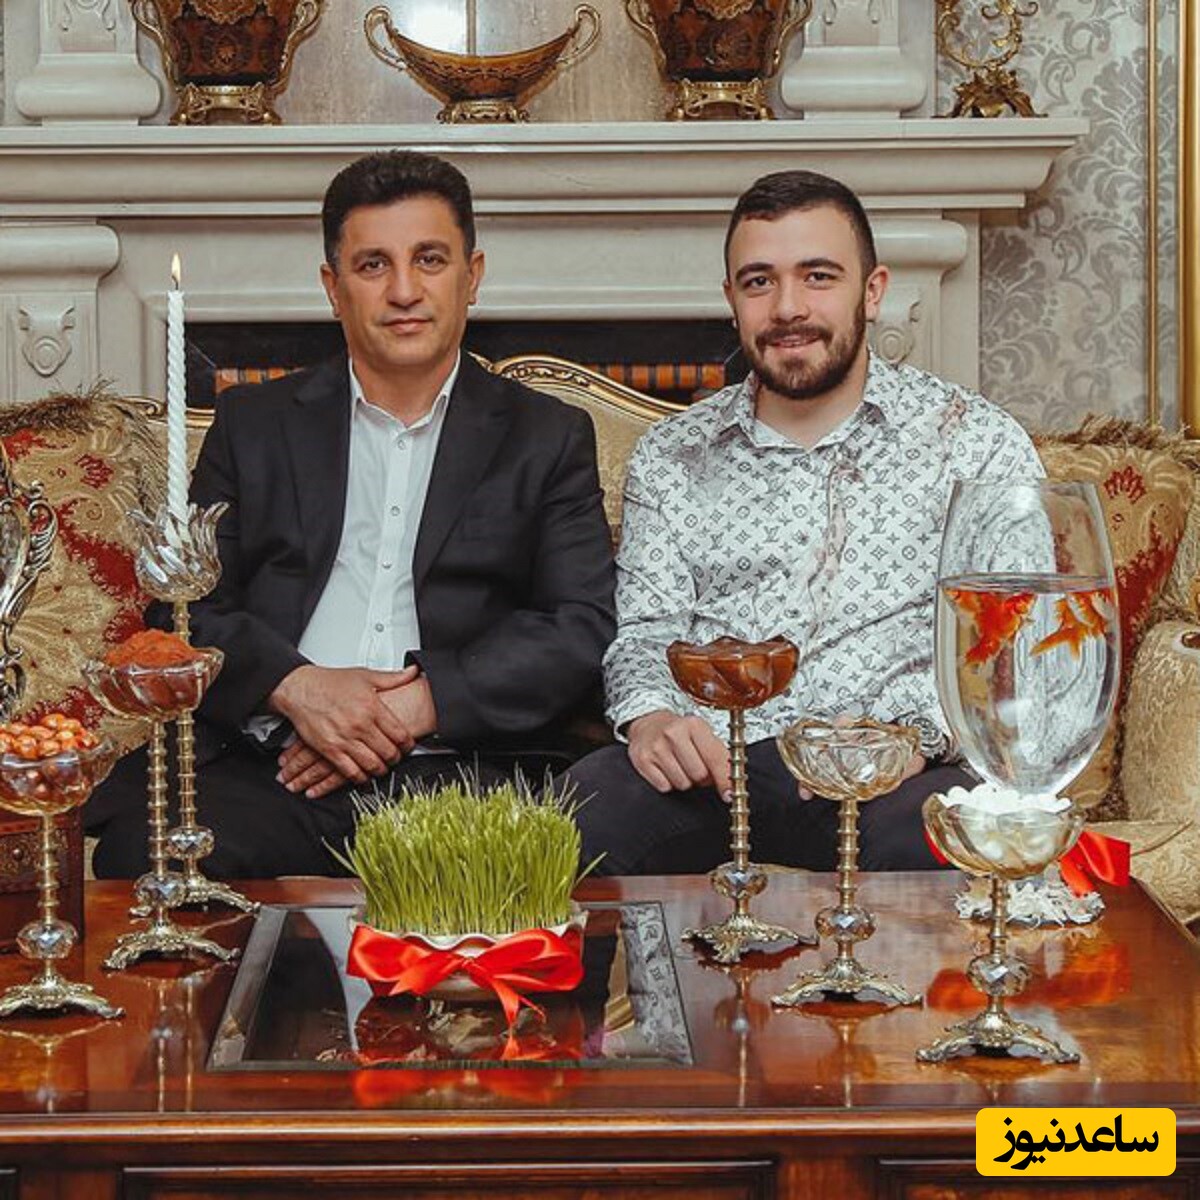 جشن تولد خودمونی و بدون تشریفات همسر محجبه امیر قلعه نویی با ظرف میوه و گلدان روی میز+عکس